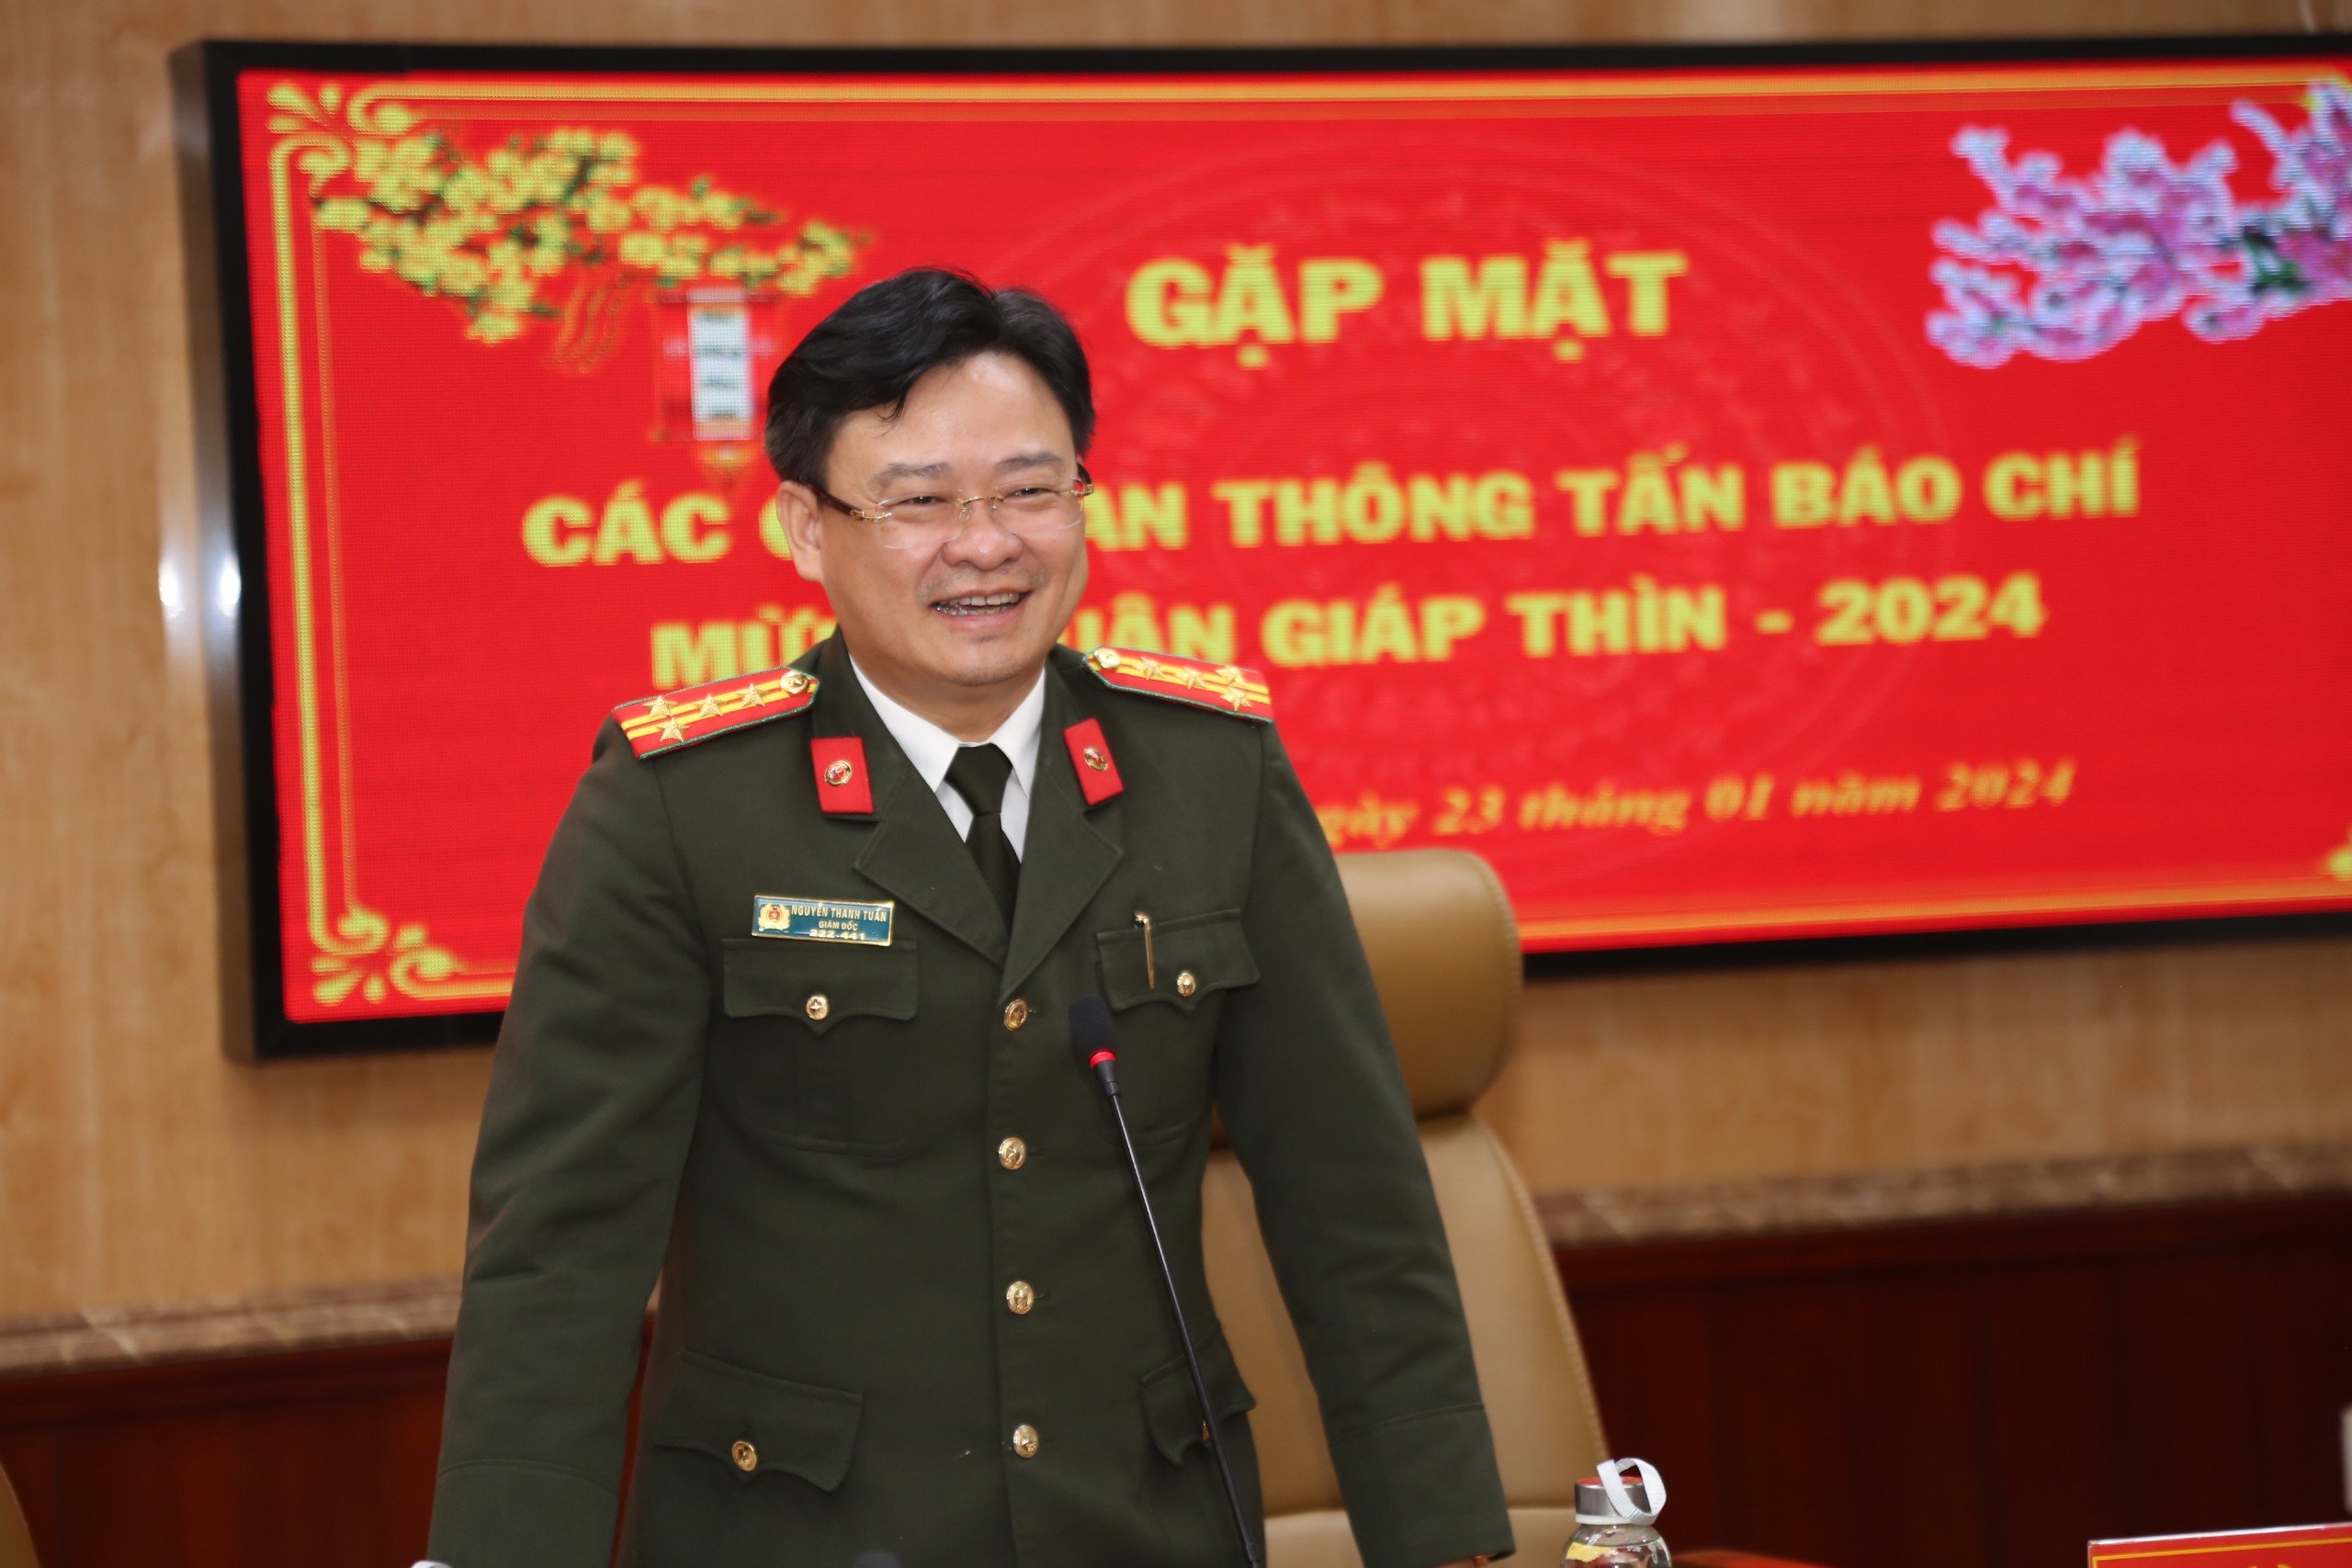 Giám đốc Công an tỉnh Thừa Thiên - Huế nhận hàng trăm lời động viên qua số điện thoại đường dây nóng- Ảnh 2.